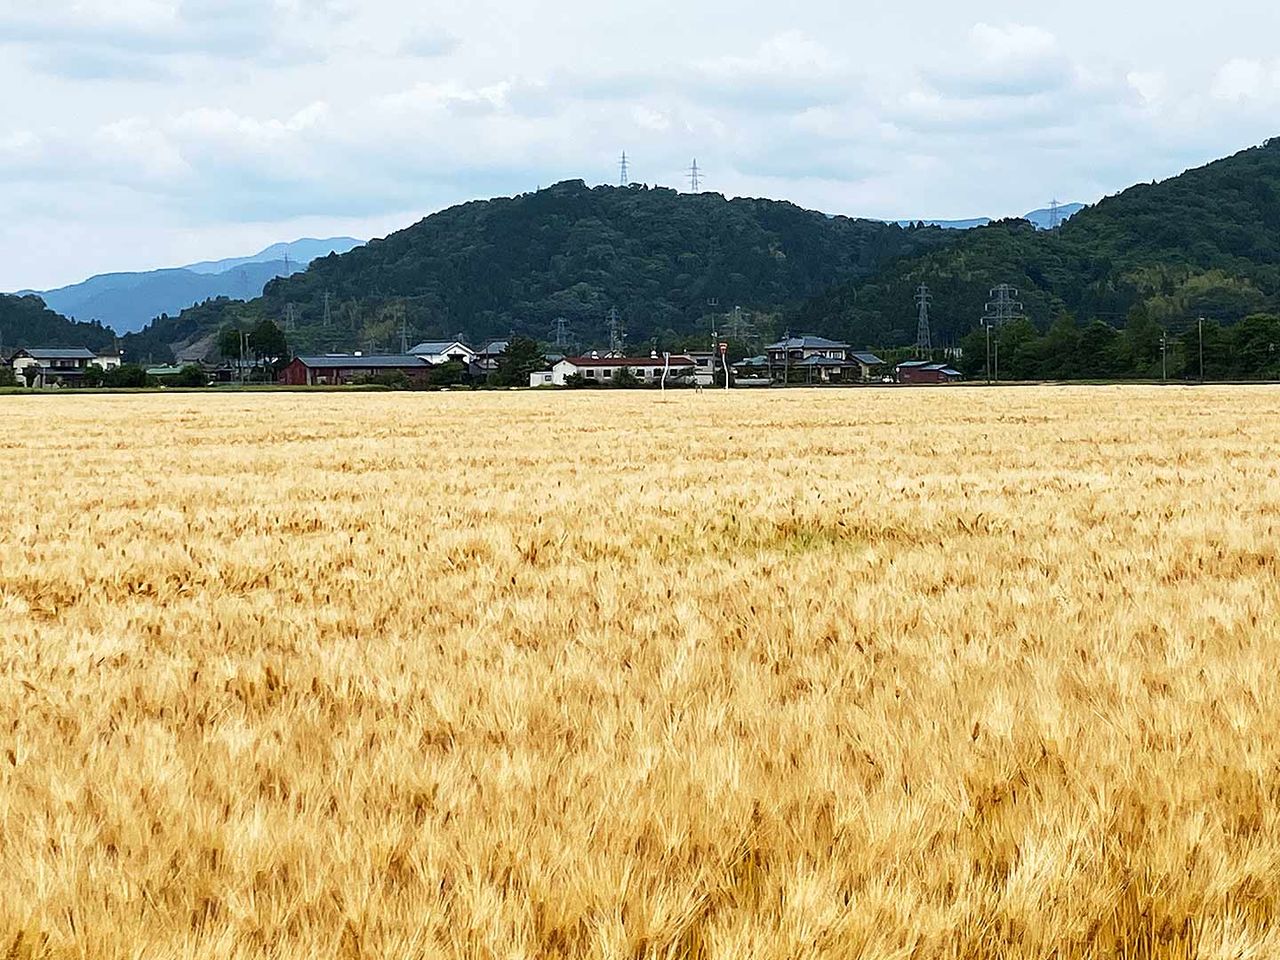 Los hermosos campos de cebada dorados. (Fotografía por cortesía de Shigehisa)